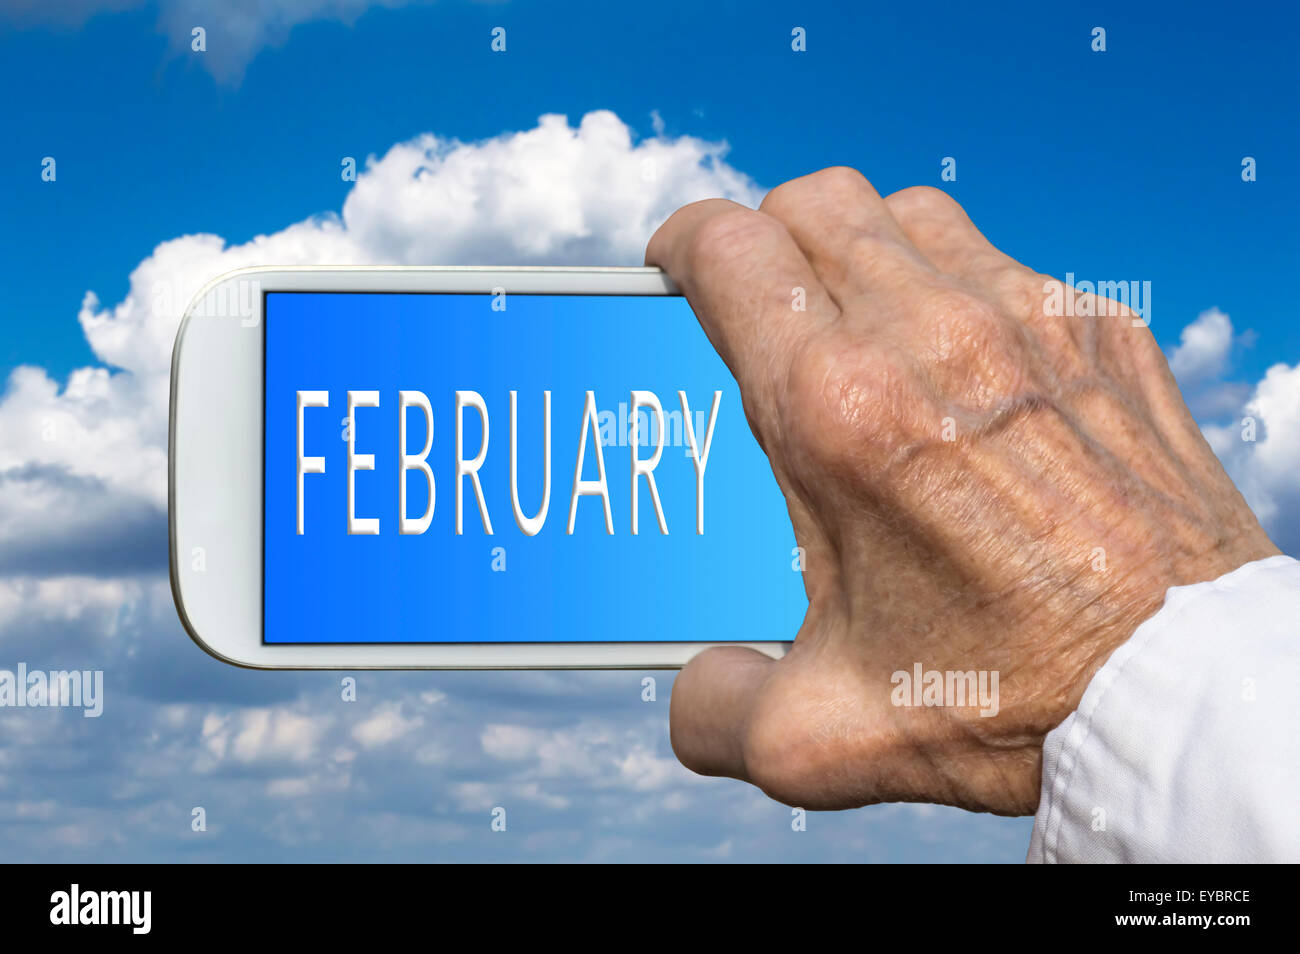 Smart phone in mano vecchia con il mese dell'anno - Febbraio sullo schermo. Messa a fuoco selettiva. Foto Stock